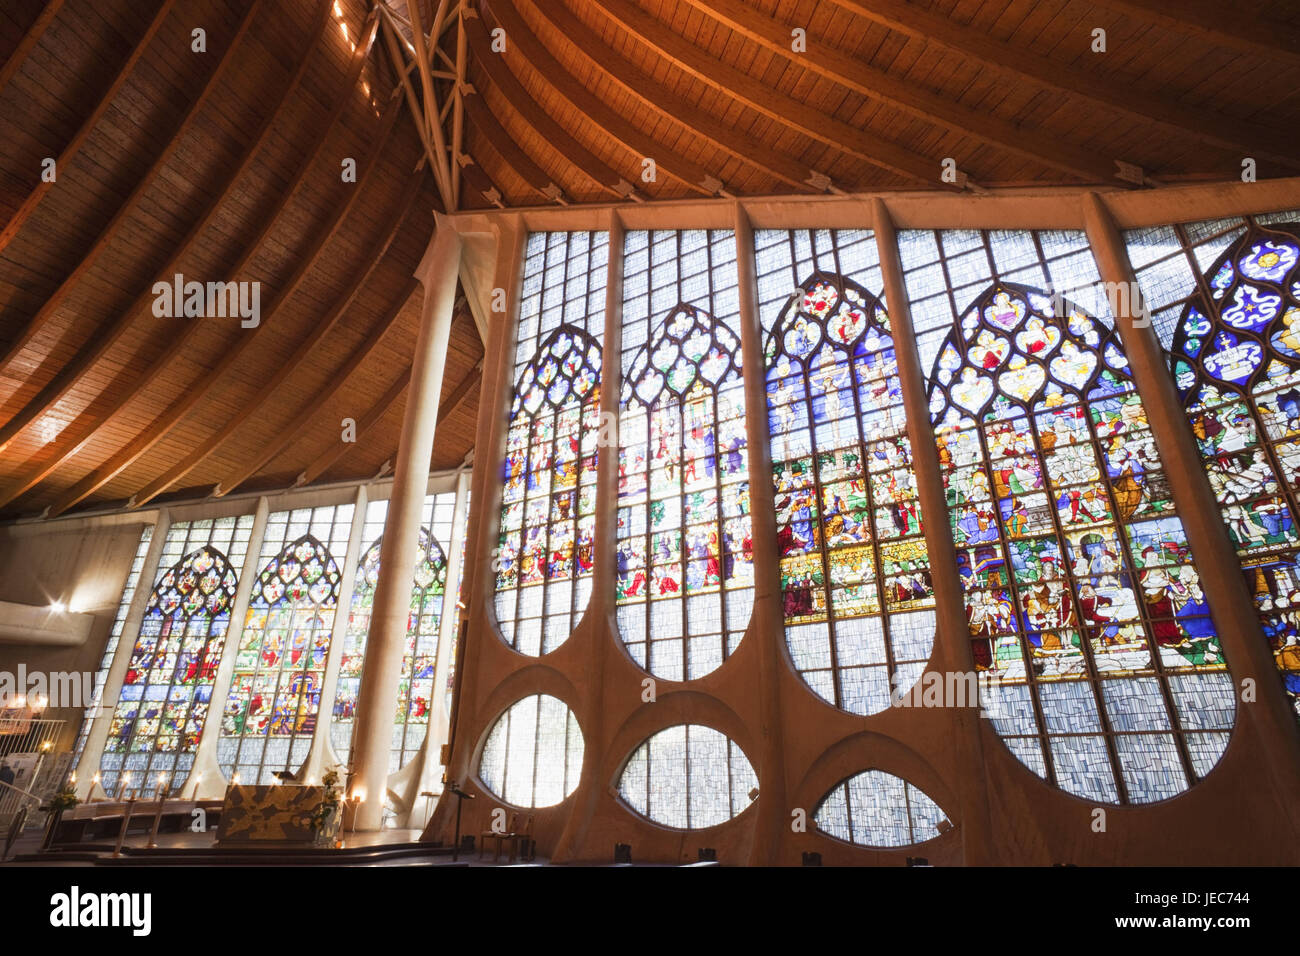 France, Normandy, Rouen, Eglise Sainte Jeanne d'Arc, inside, Stock Photo